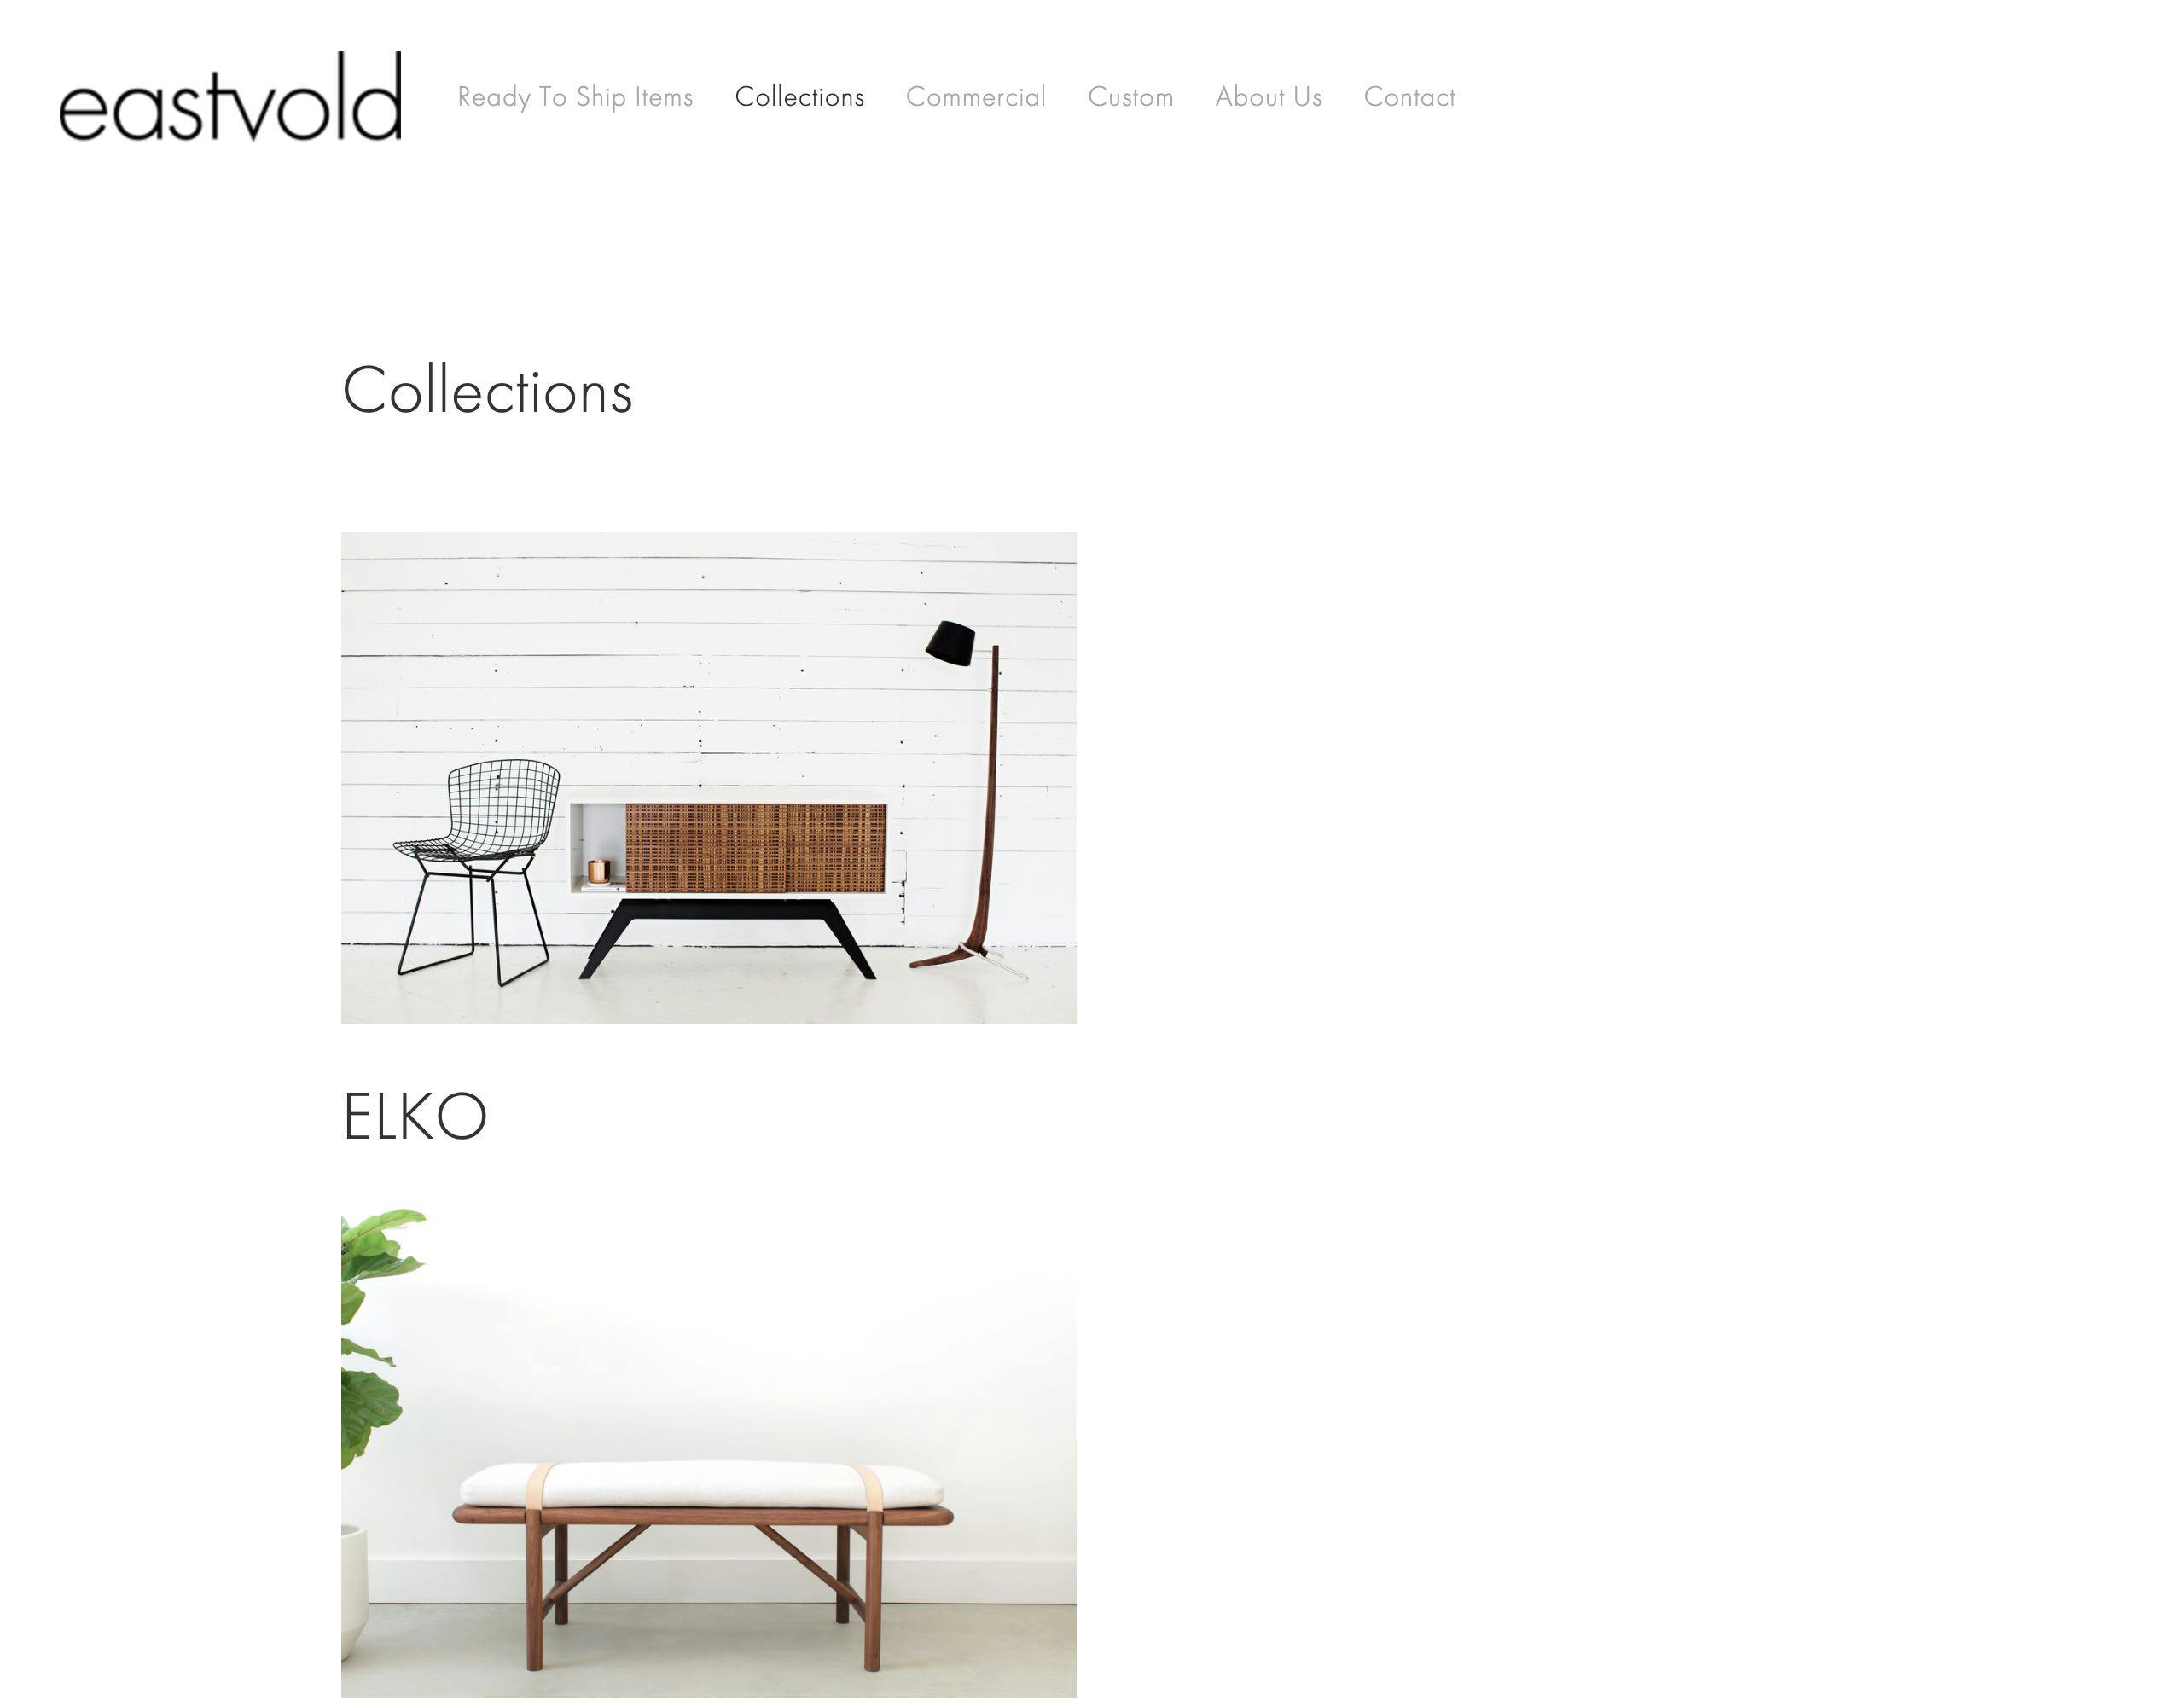 Eastvold website